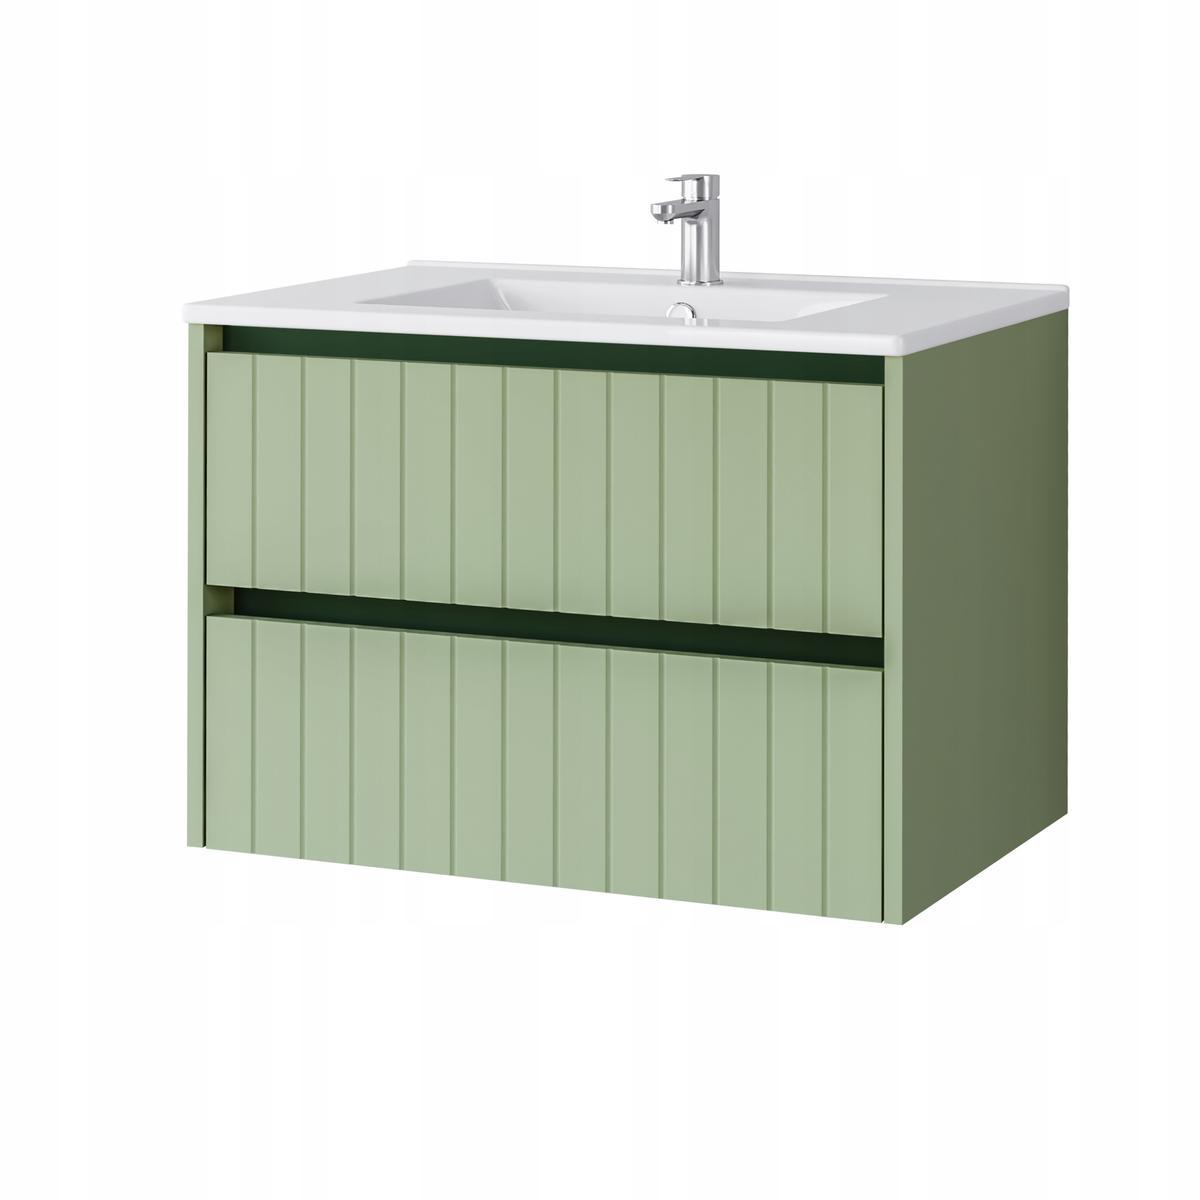 Zestaw mebli łazienkowych LINE z umywalką 70 cm + 2x słupek 165 cm 4 elementy front MDF zielony nr. 9